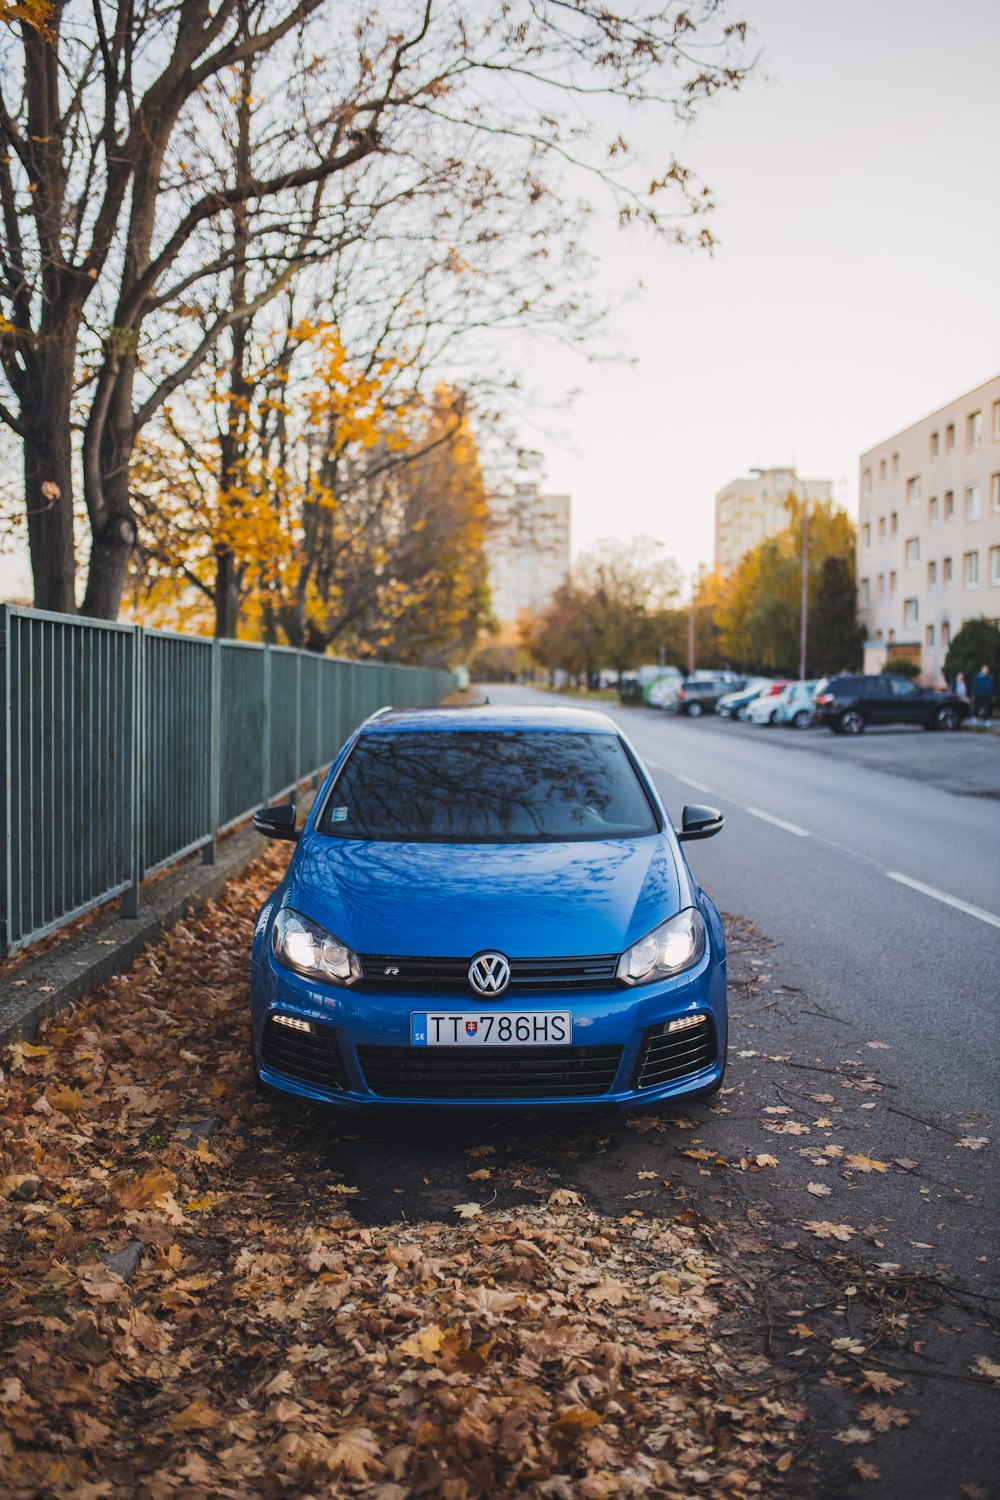 Véhicule Volkswagen bleu sur route goudronnée